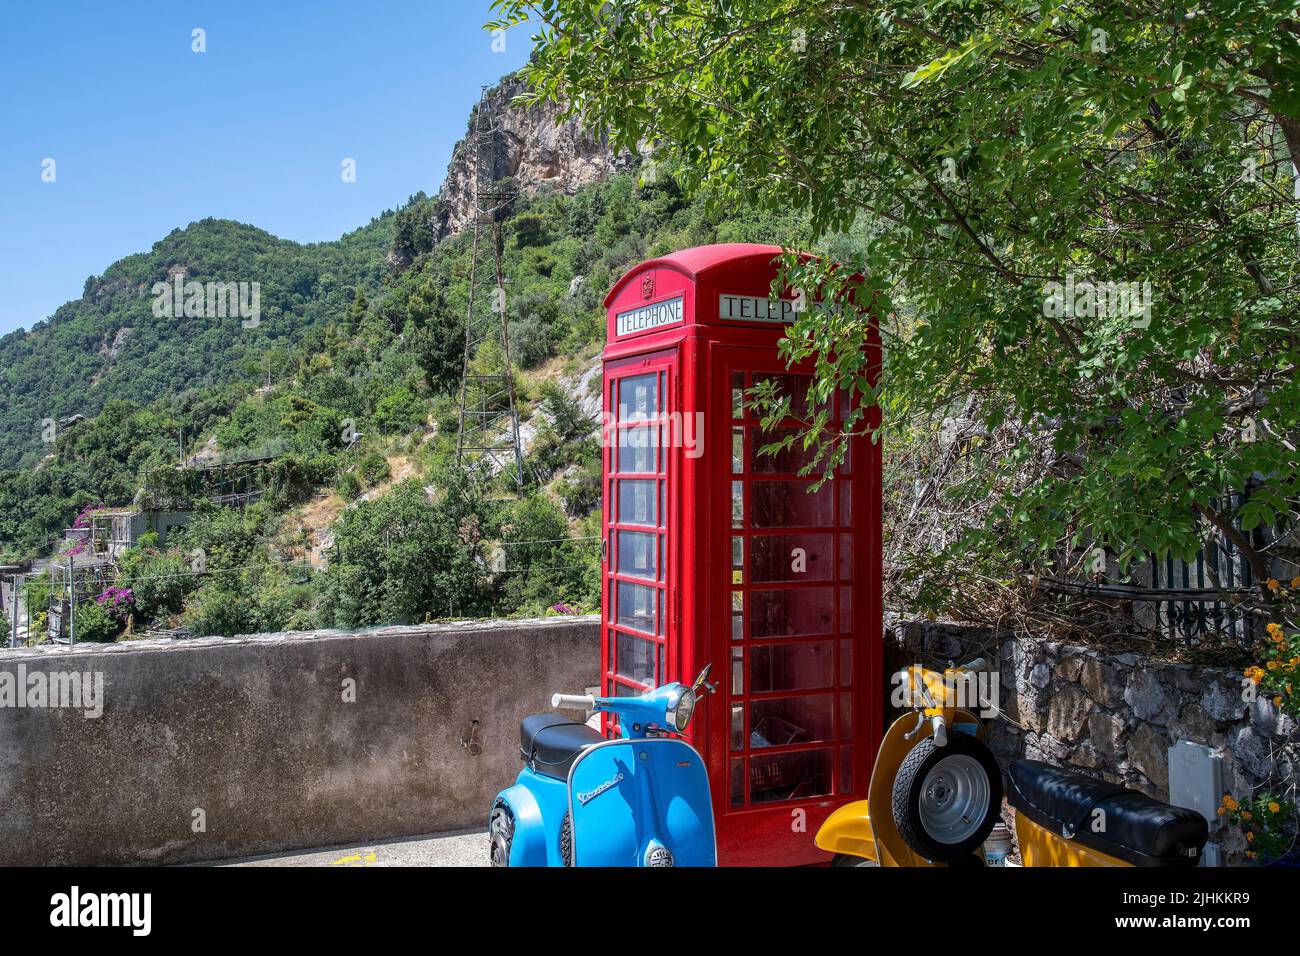 Positano es un pueblo junto al acantilado en la costa de Amalfi, en el sur de Italia. Caja de teléfono británica roja por encima del pueblo Foto de stock